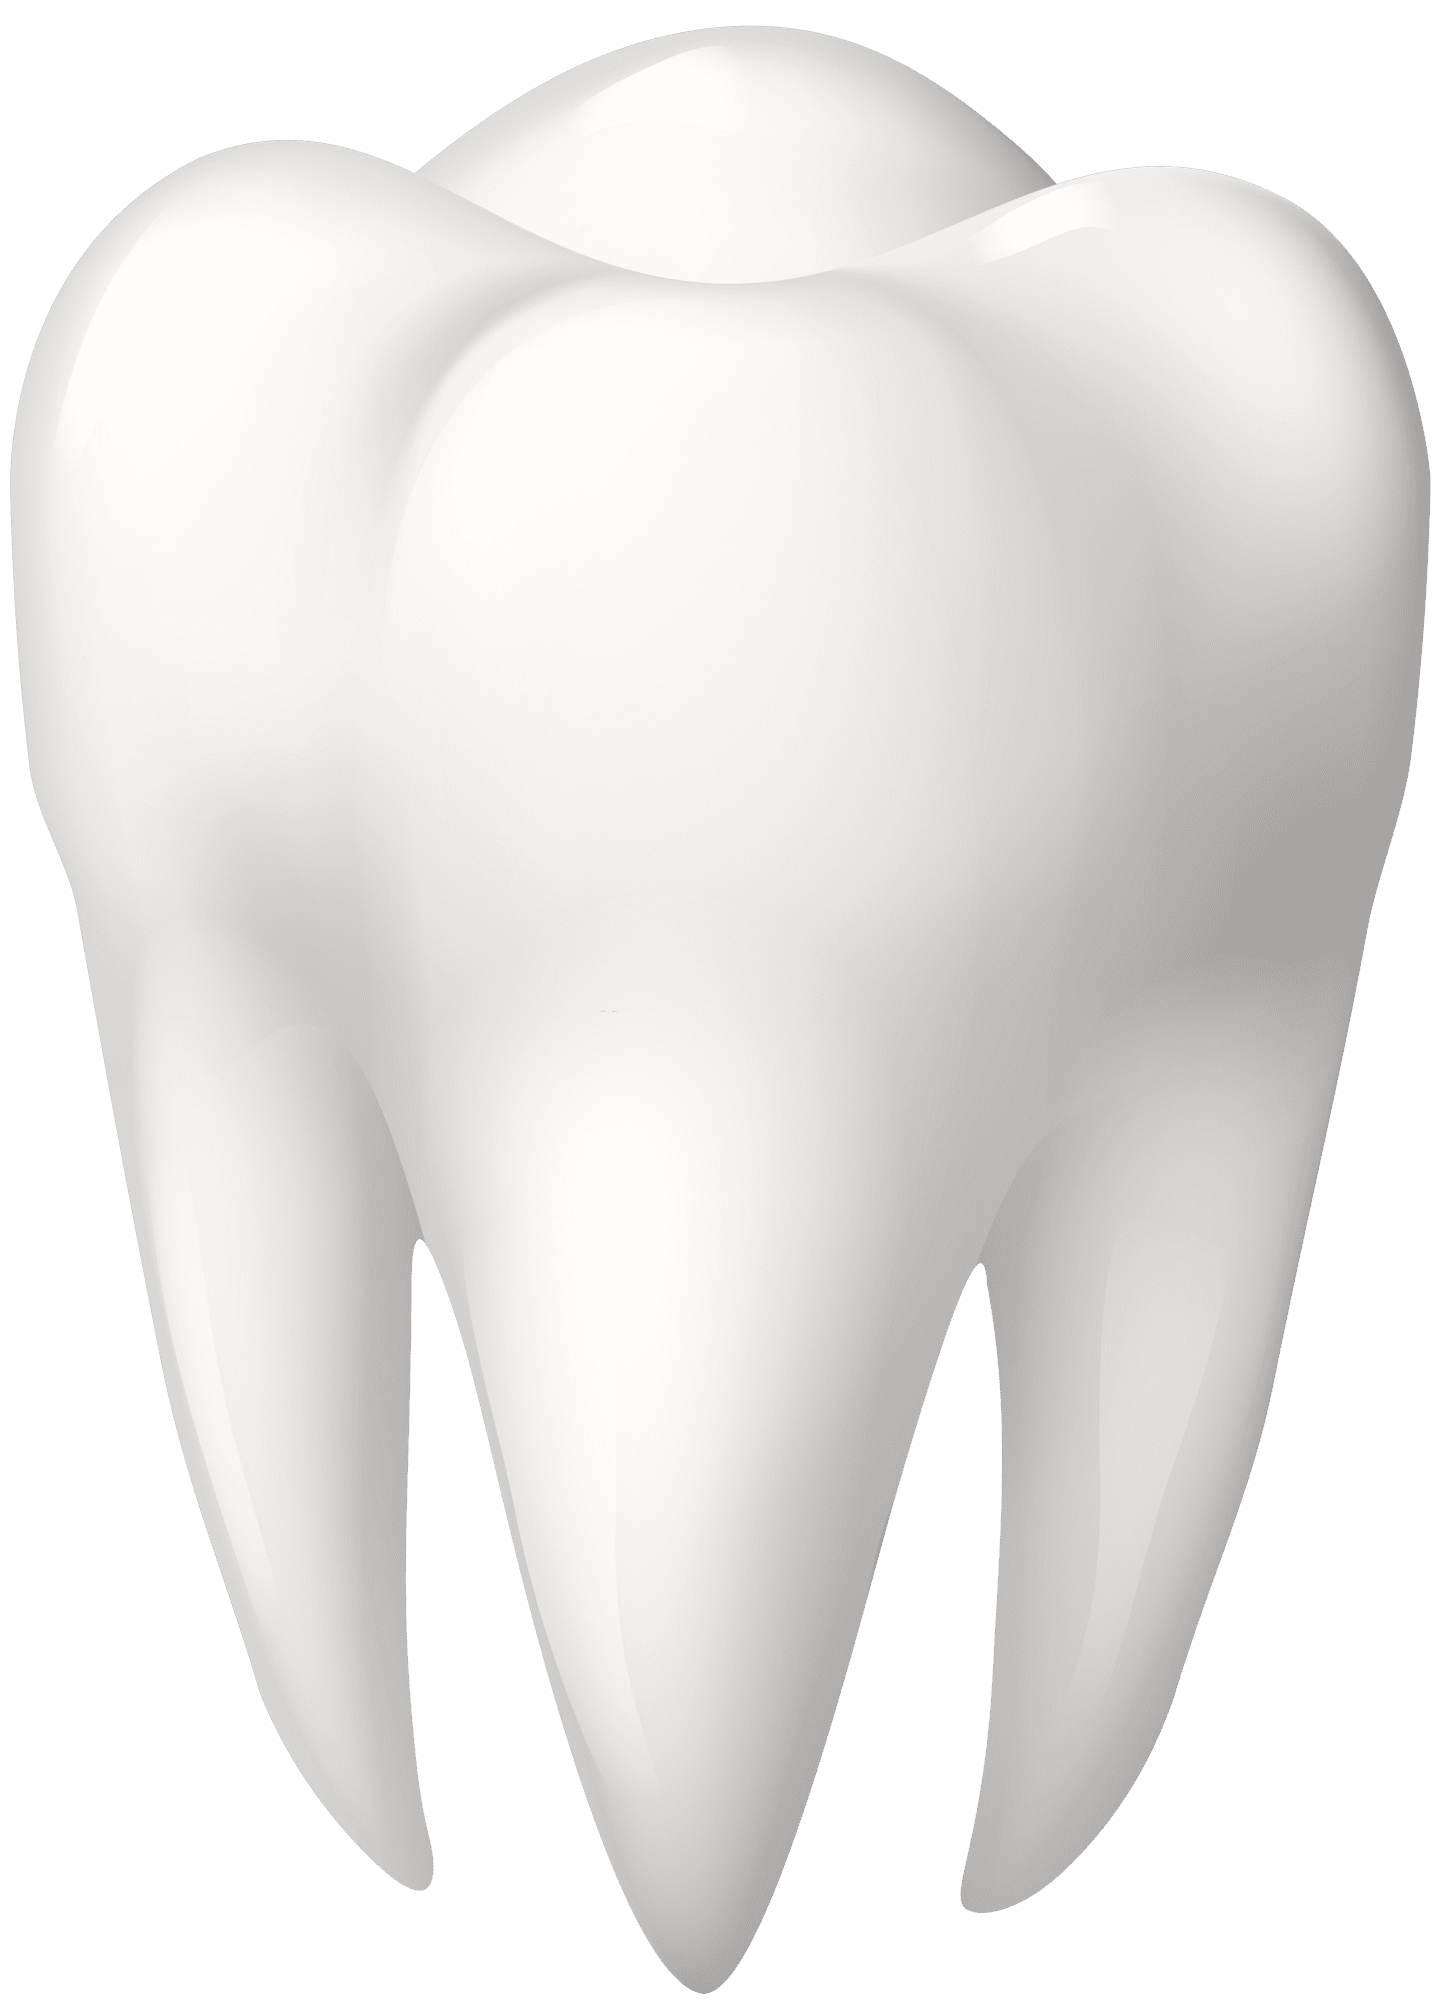 Teeth tooth molar clipart best vector